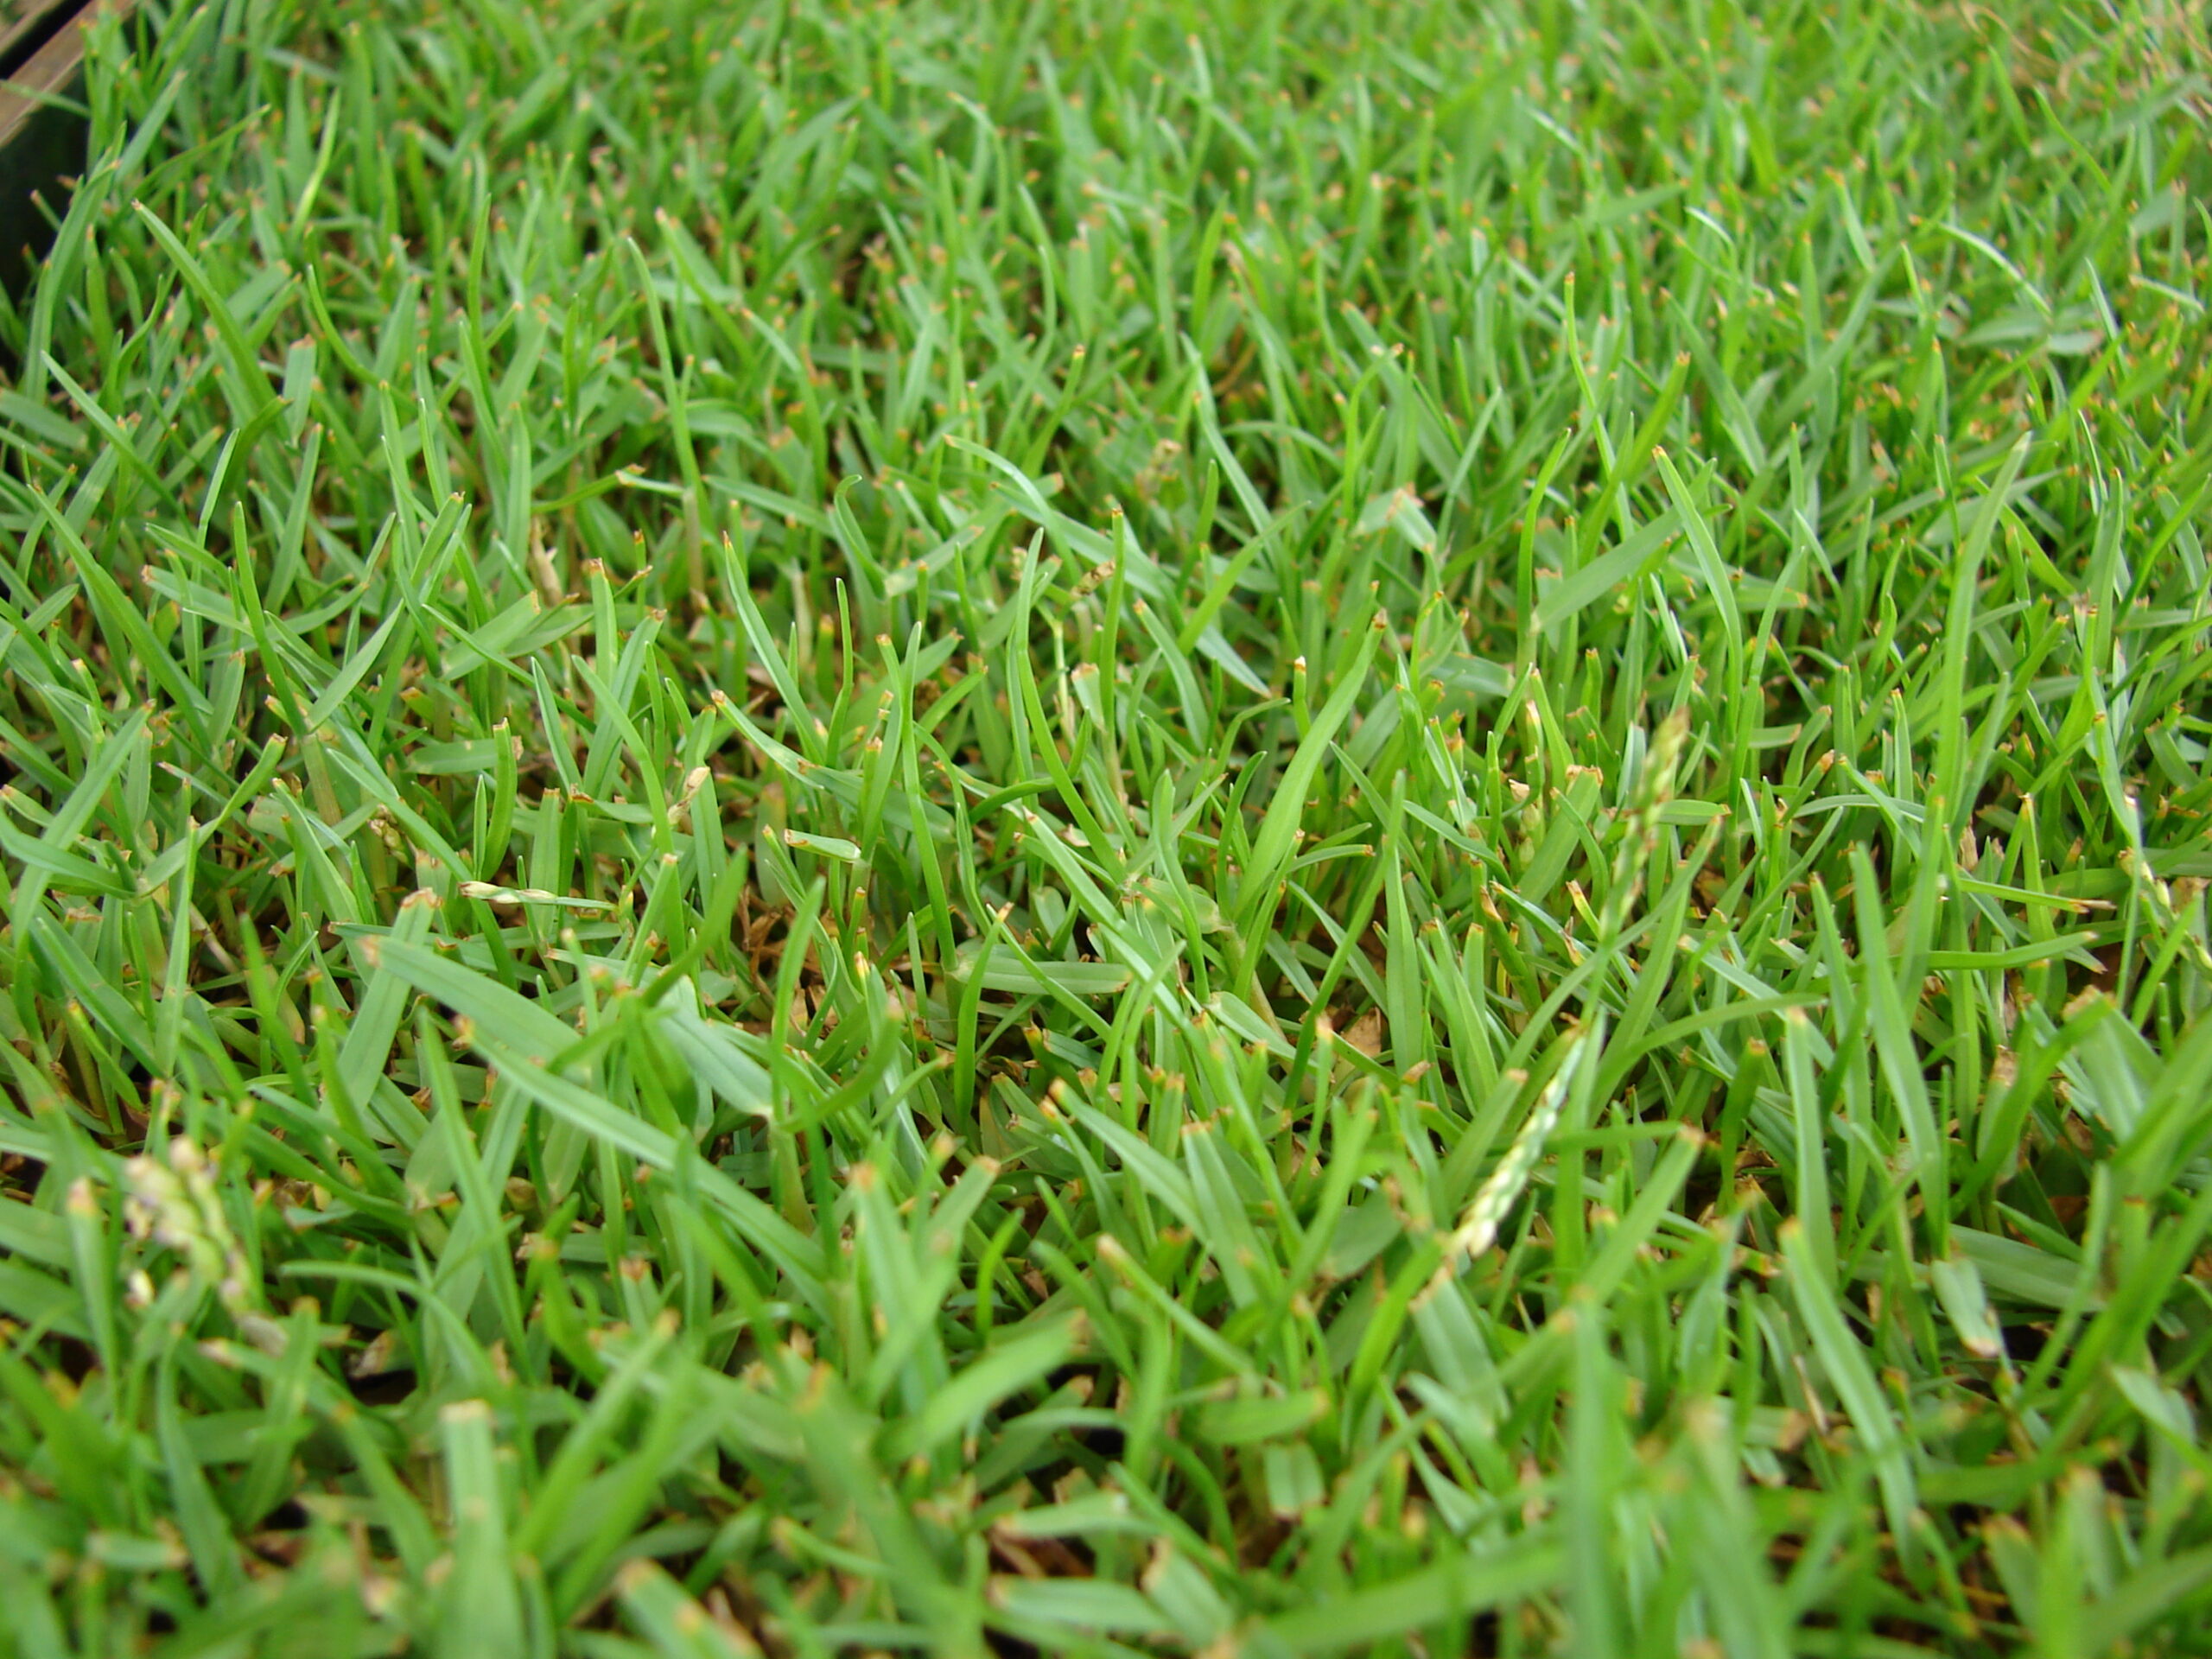 Zoysia Grass Plugs lupon.gov.ph